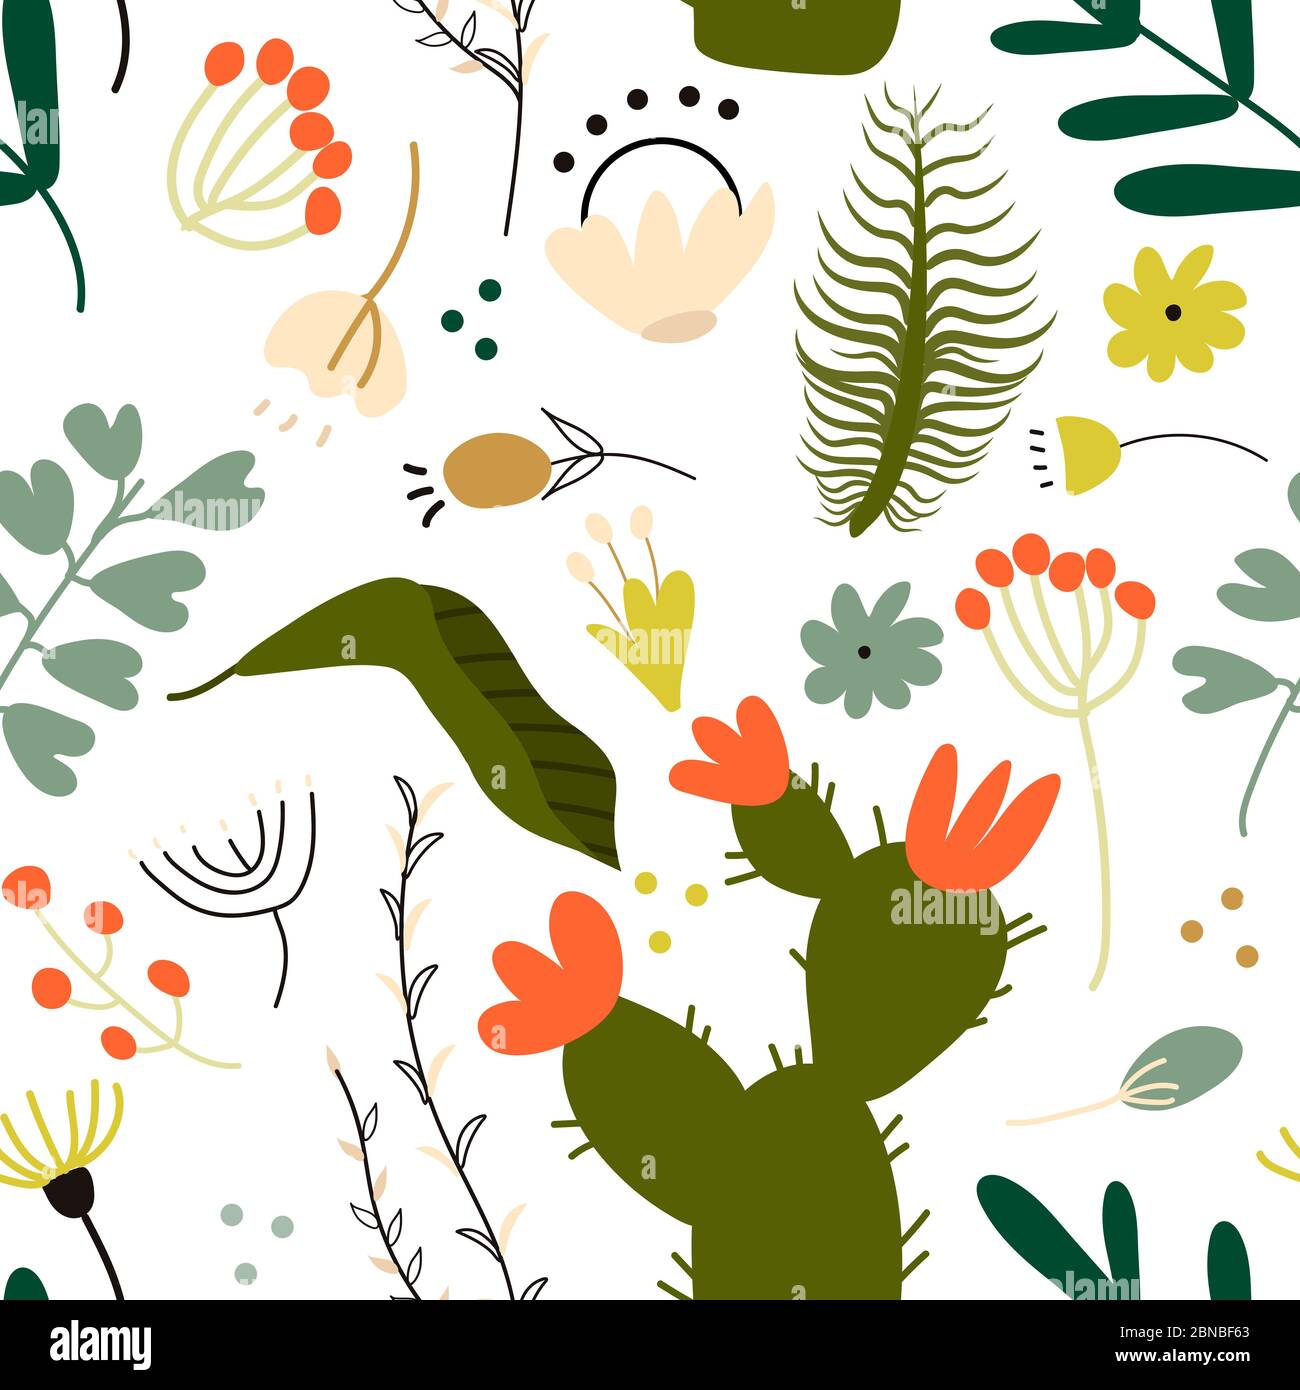 Nahtlose Muster-Set von vielen verschiedenen grünen tropischen exotischen Blättern, Pflanzen und Blumen auf weißem Hintergrund. Sammlung von abgeschlossen und isoliert Stock Vektor